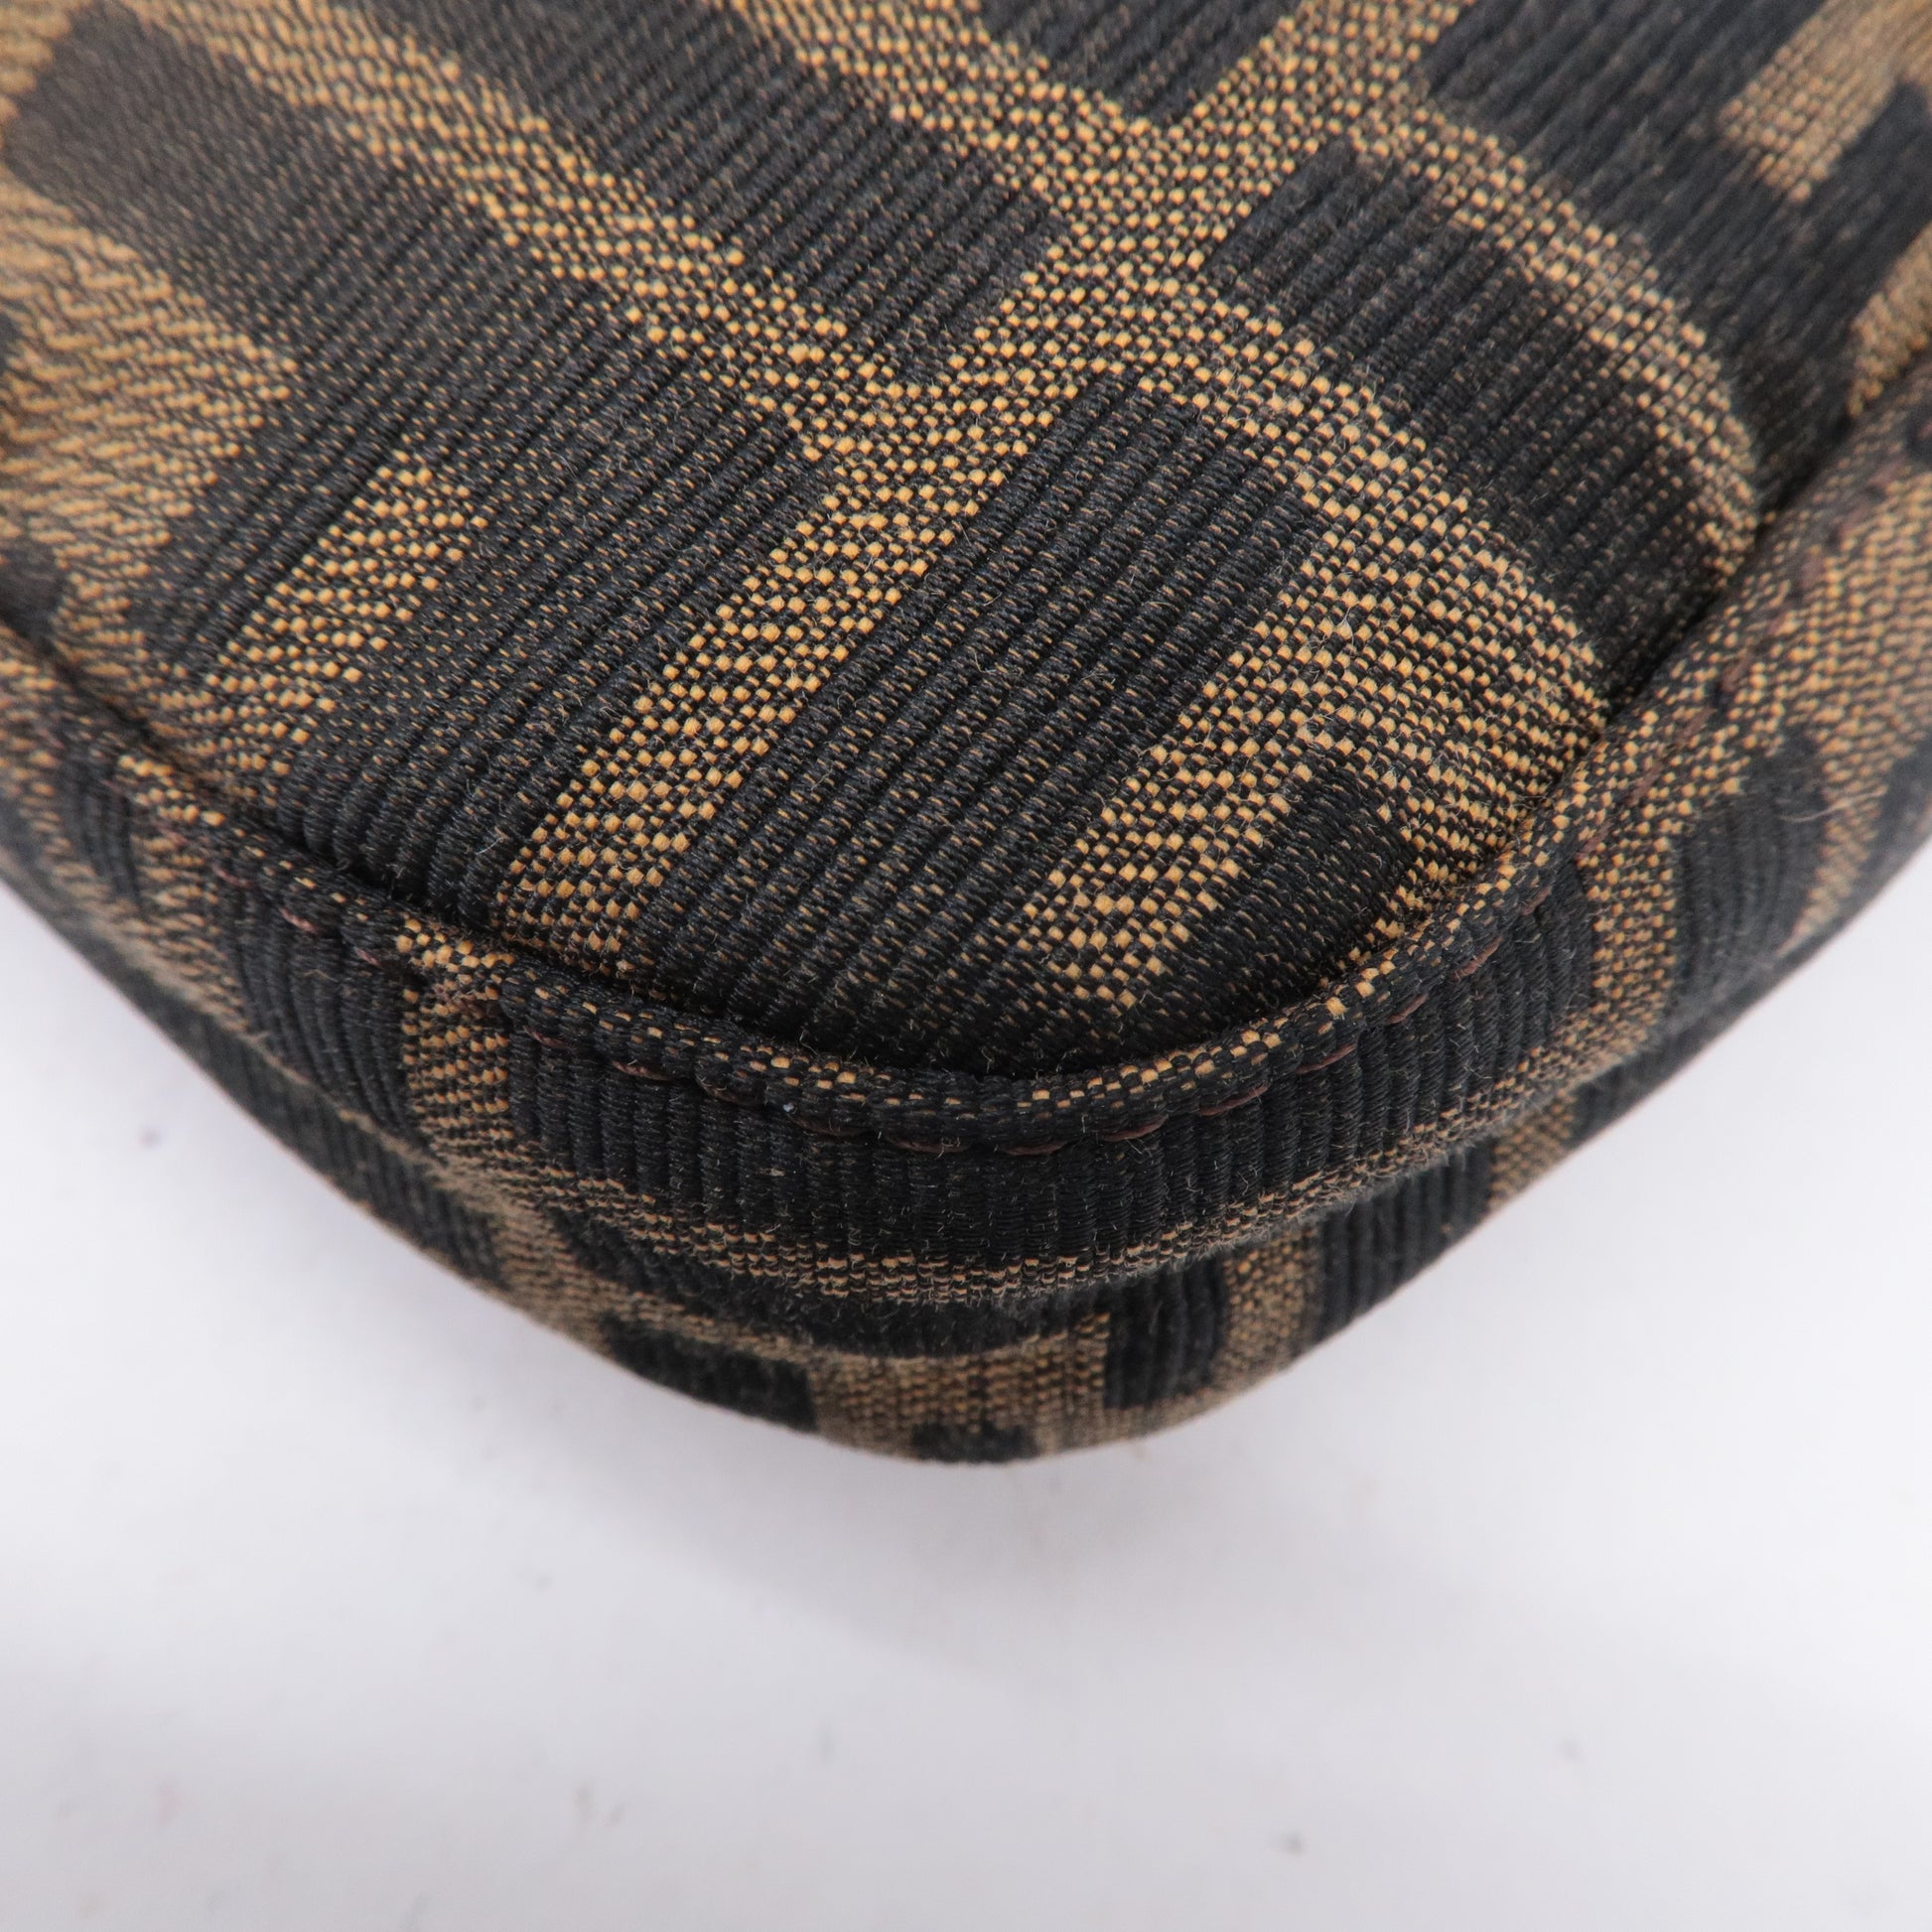 FENDI-Zucca-Canvas-Leather-Shoulder-Bag-Brown-Black-26566 – dct